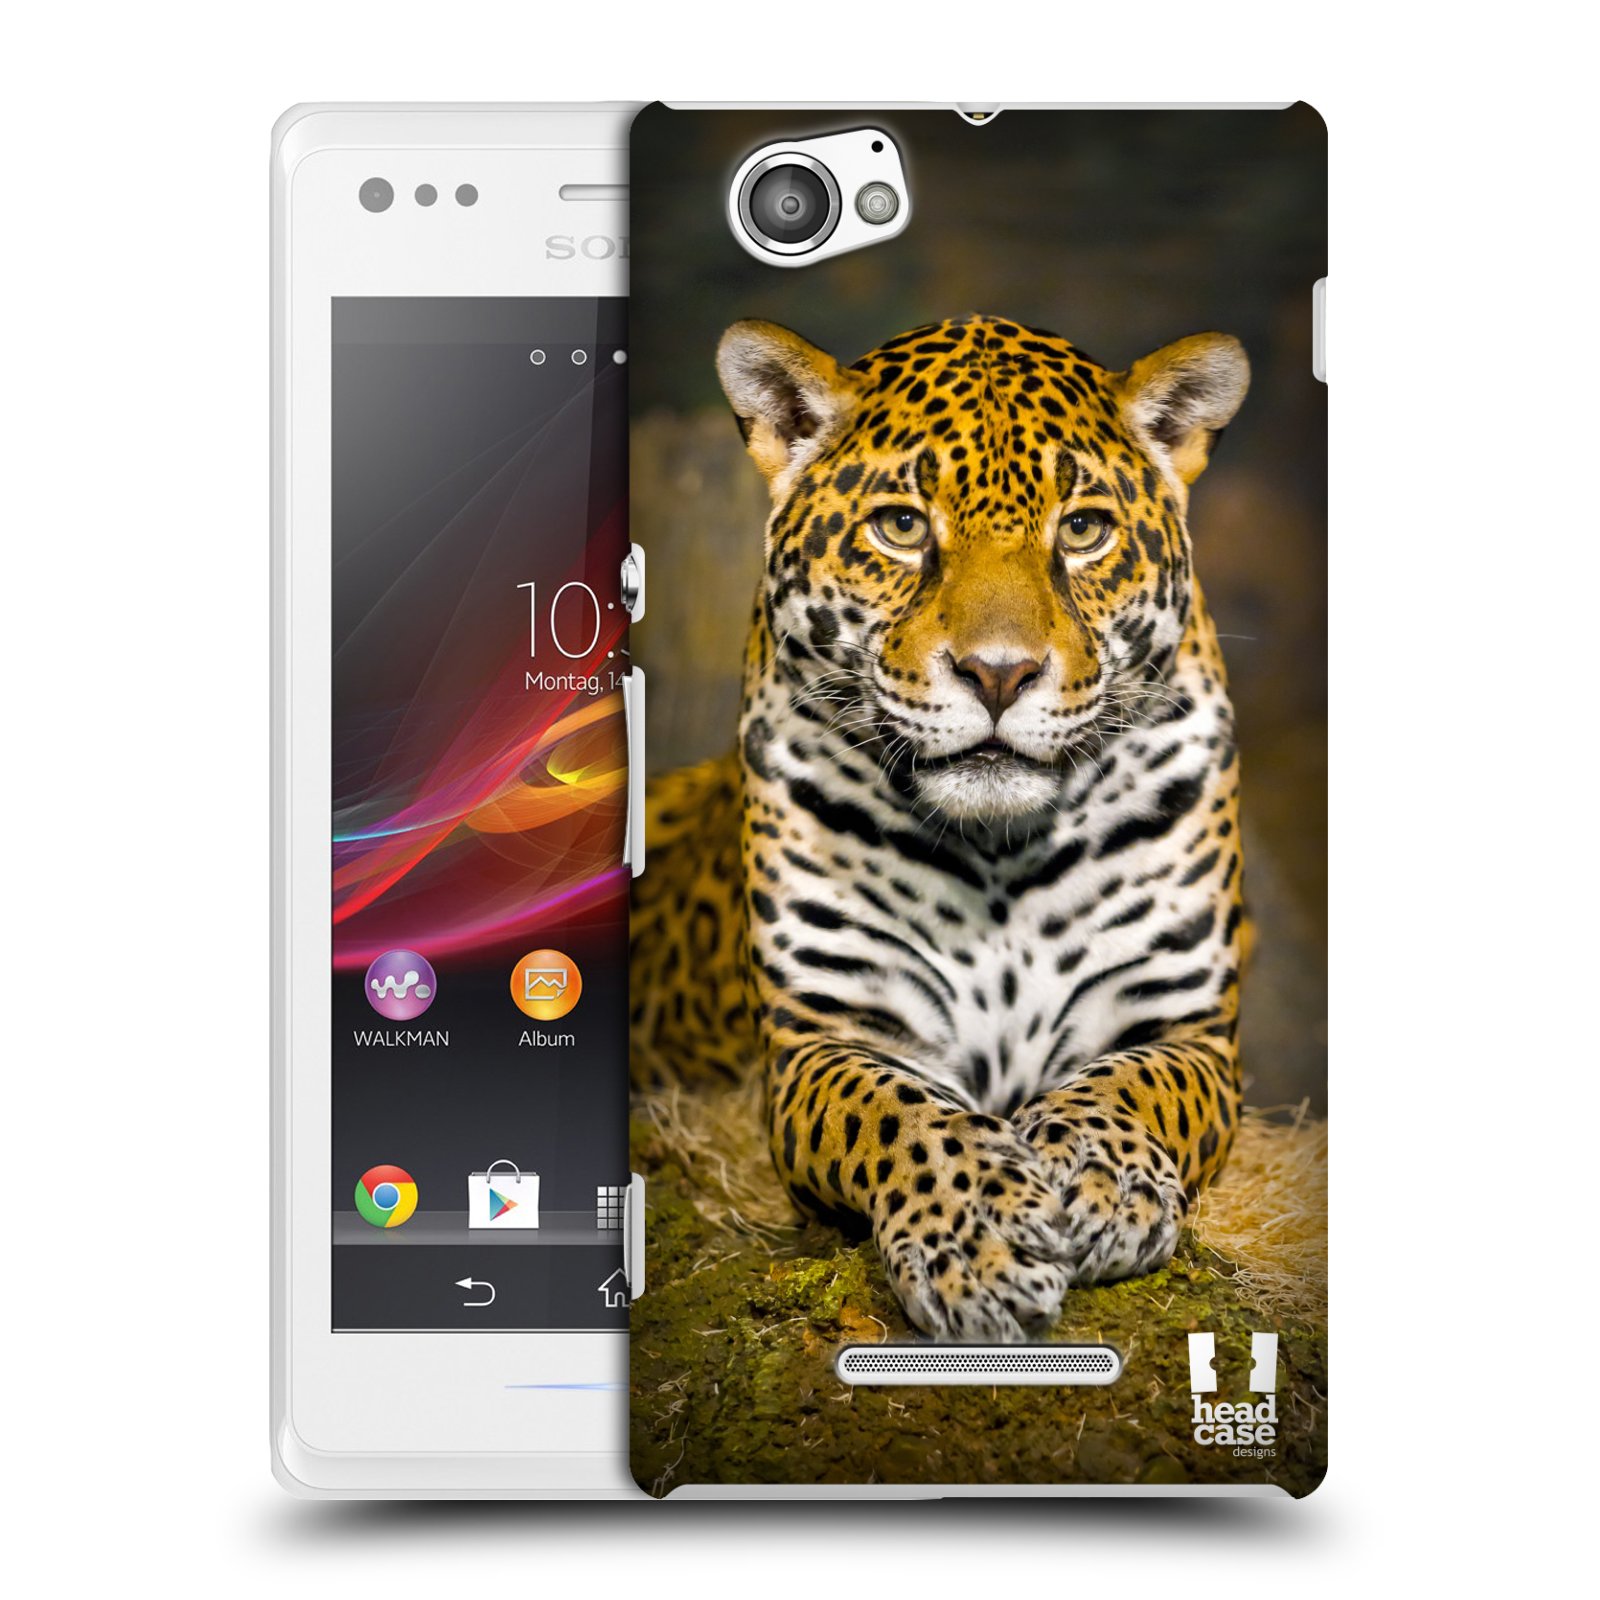 HEAD CASE plastový obal na mobil Sony Xperia M vzor slavná zvířata foto jaguár